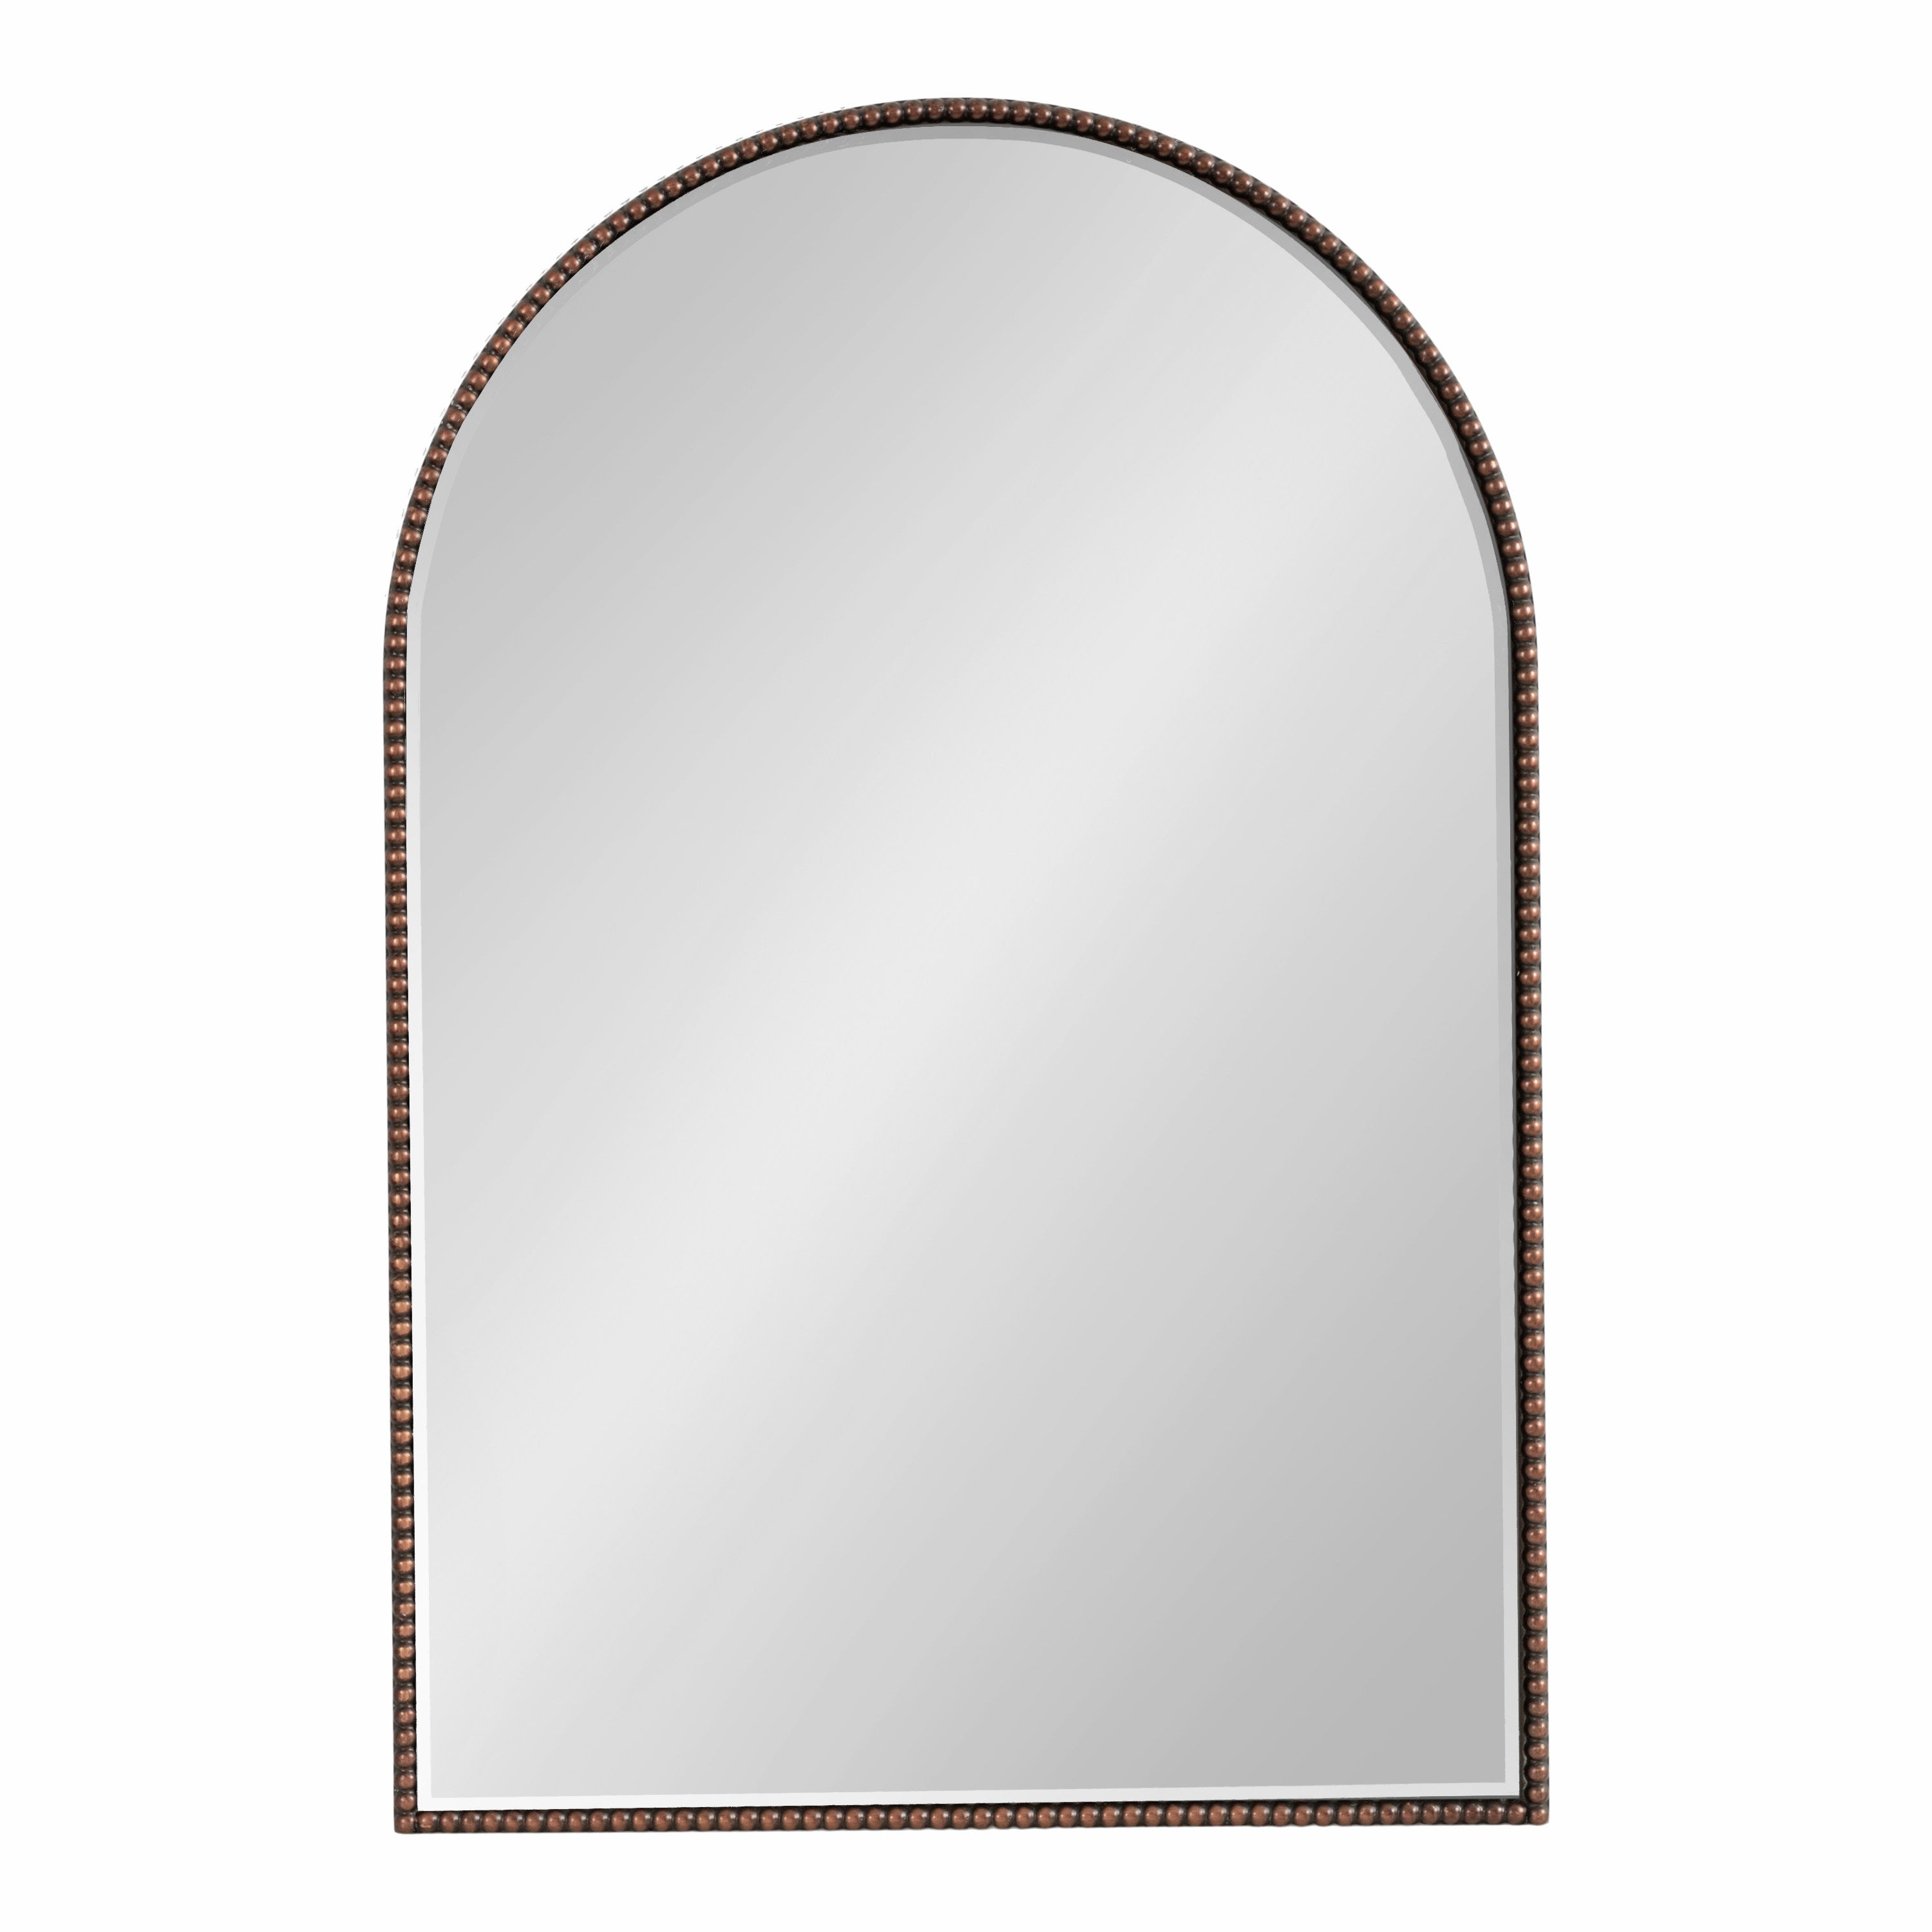 Gwendolyn Arch Wall Mirror